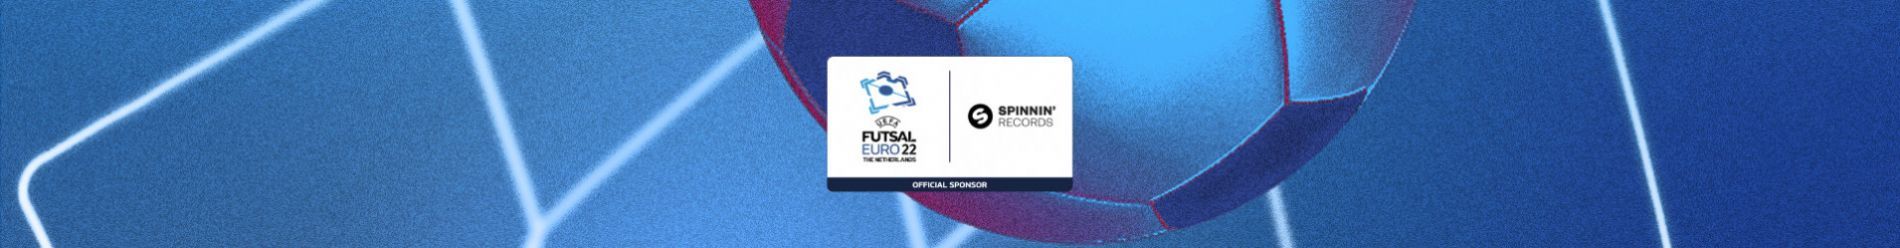 CREATE THE UEFA FUTSAL EURO 2022 GOALTUNE!